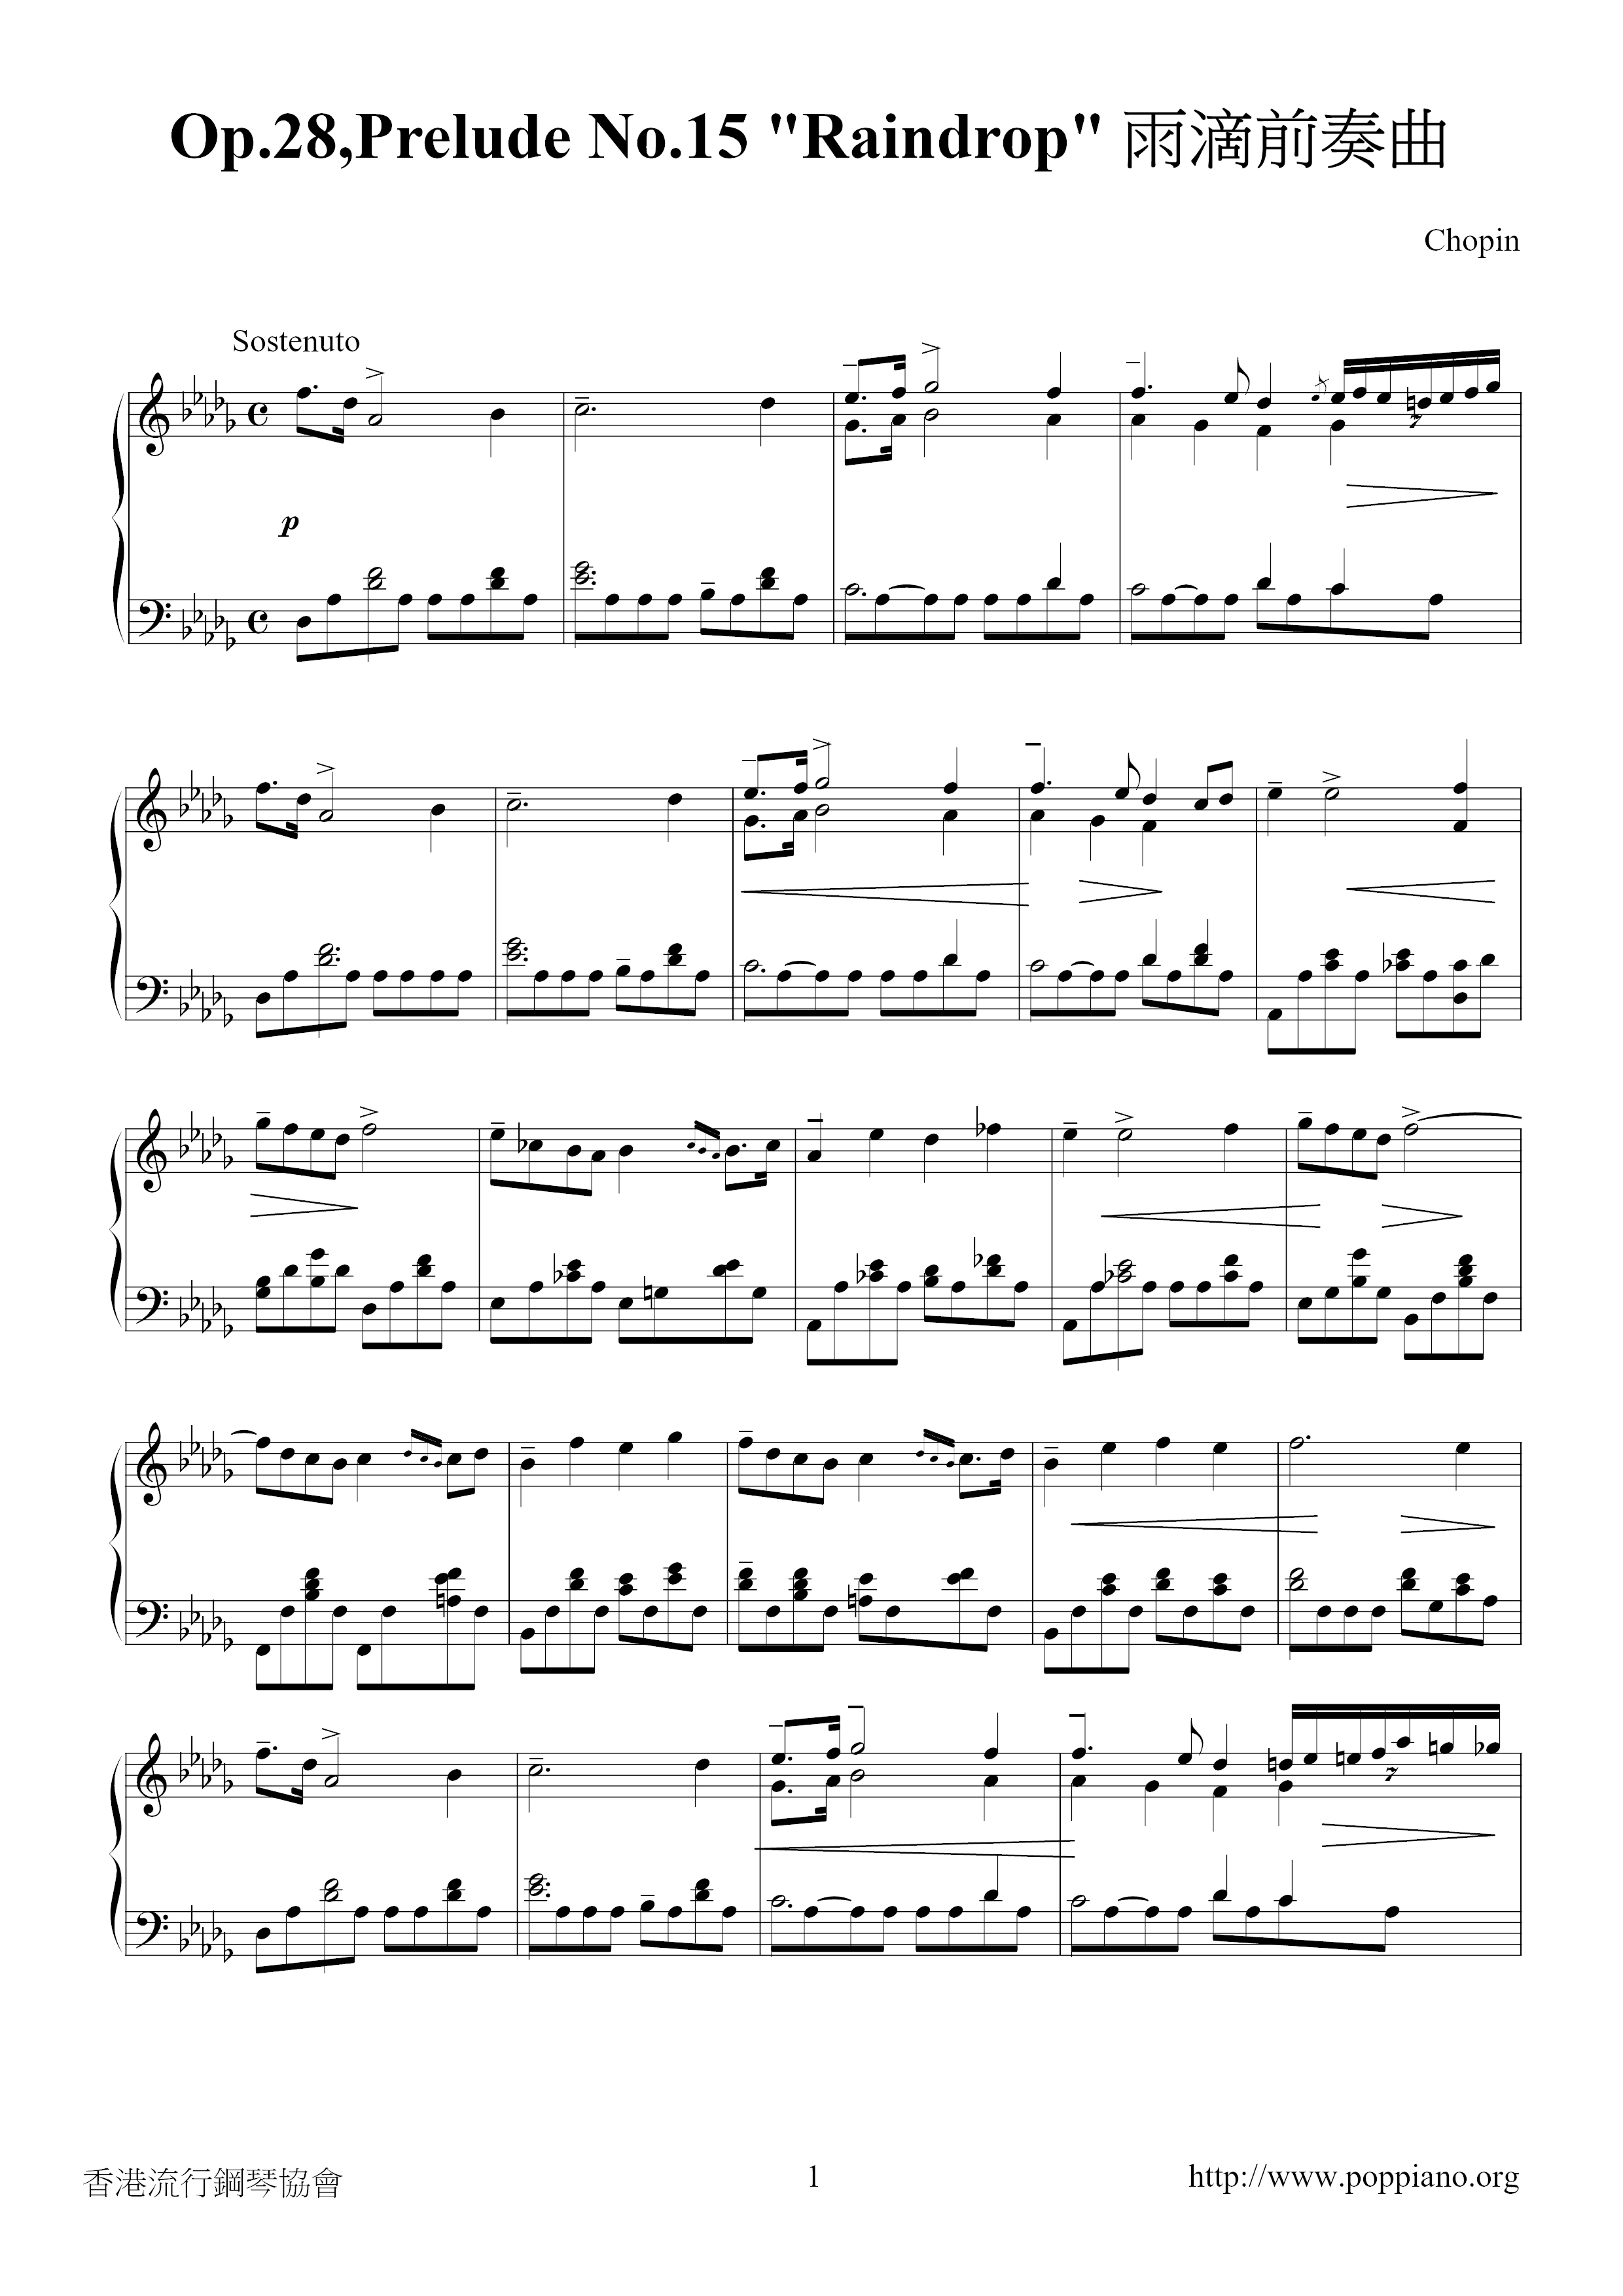 Op. 28, Prelude No. 15 